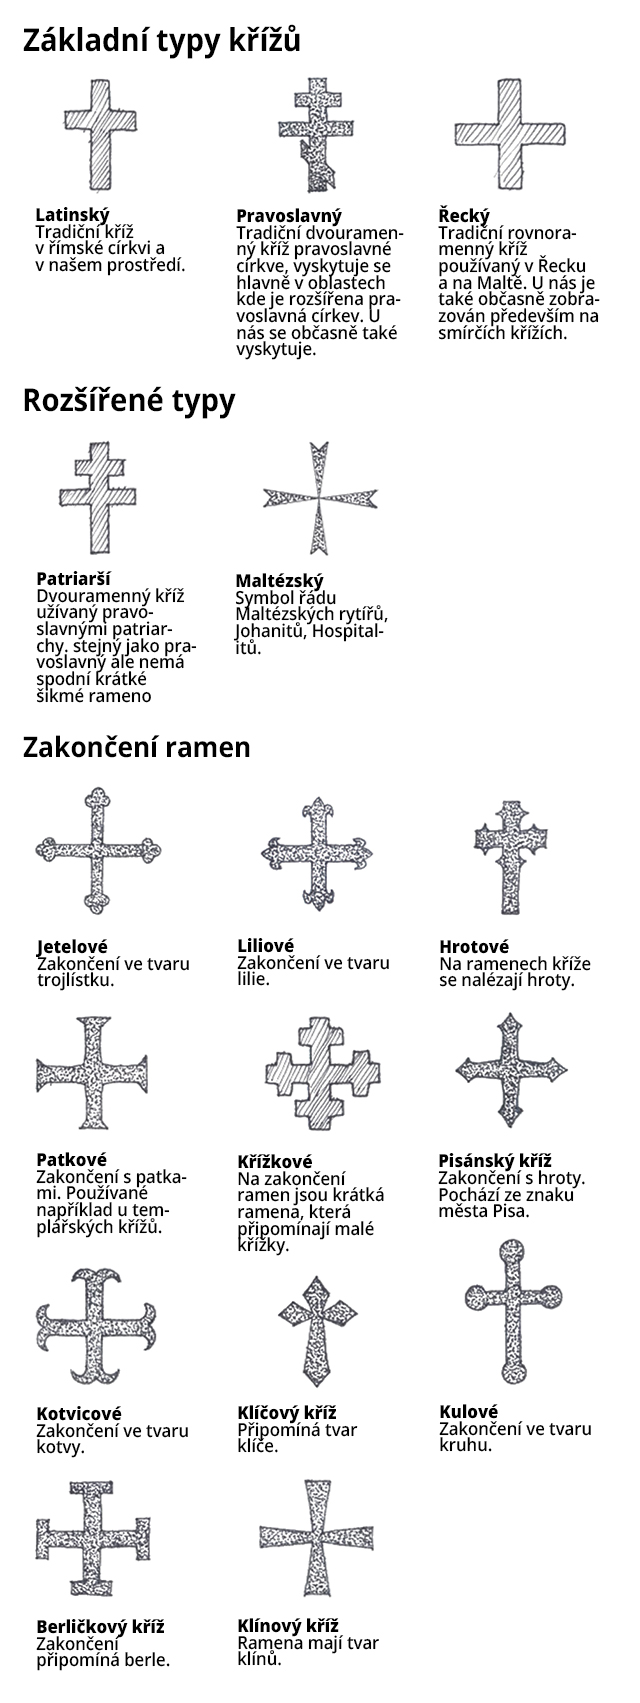 Křížky jako symbol a co o nich vlastně víme | LovecPokladu.cz